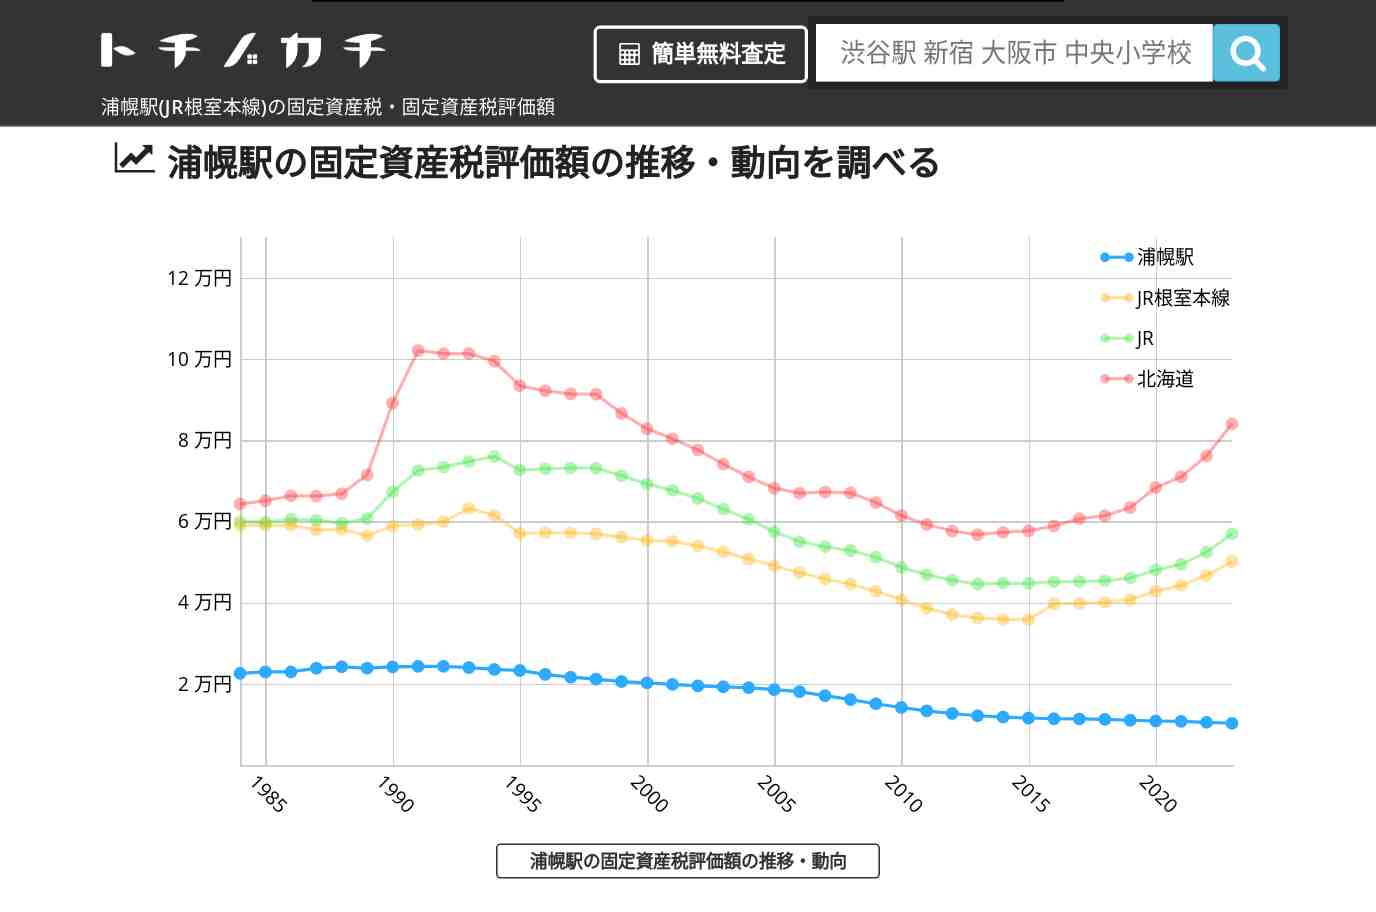 浦幌駅(JR根室本線)の固定資産税・固定資産税評価額 | トチノカチ